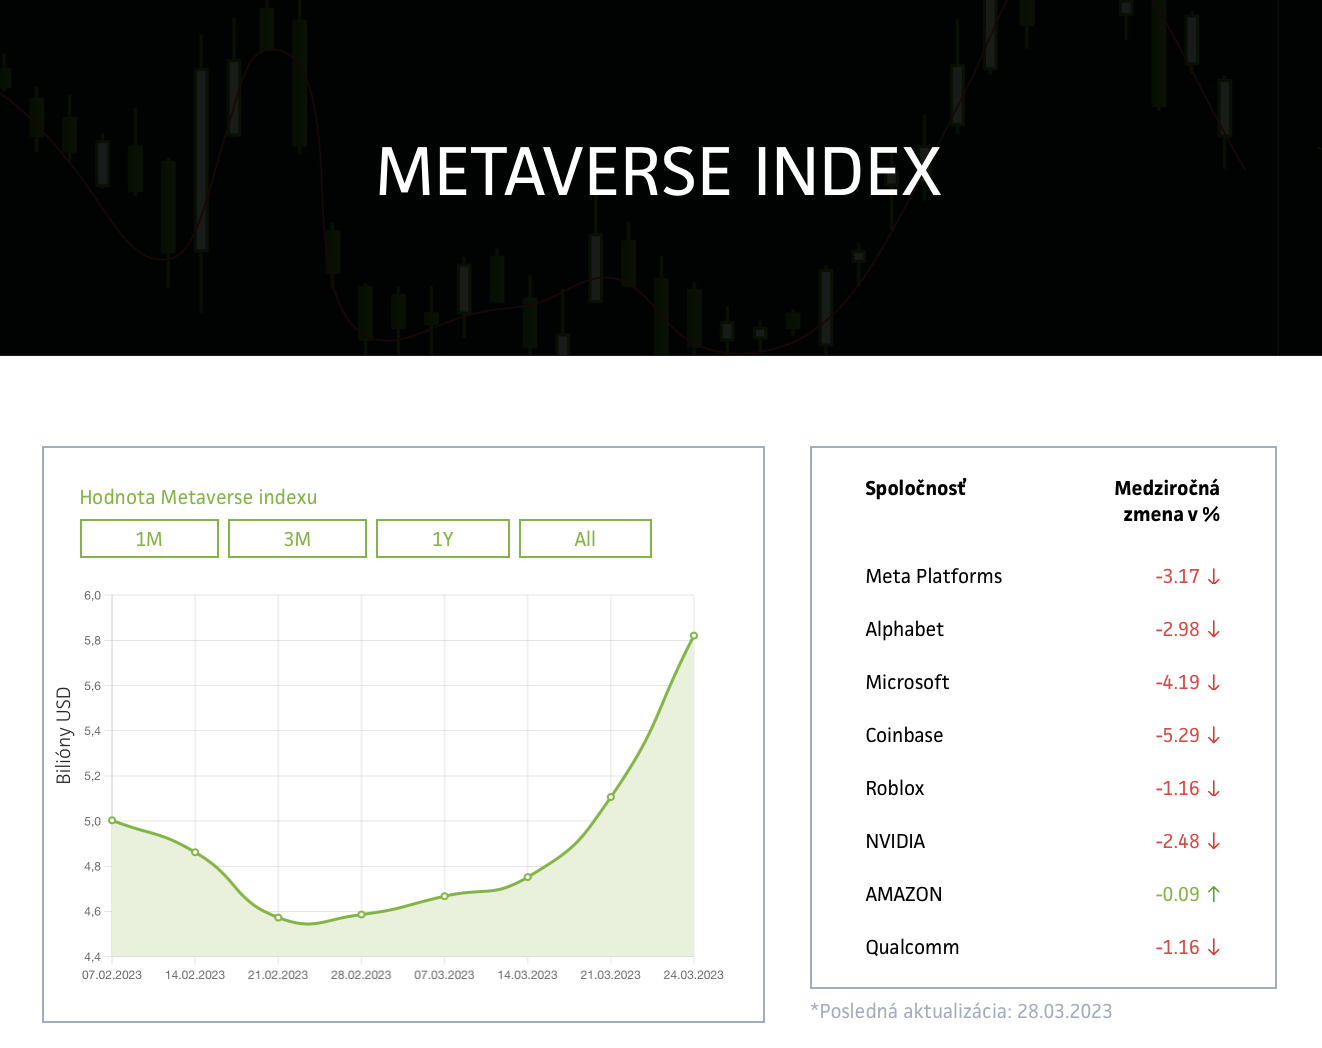 Wonderinterest | Metaverso es volátil, pero a pesar de esto, sigue siendo un segmento buscado por inversores